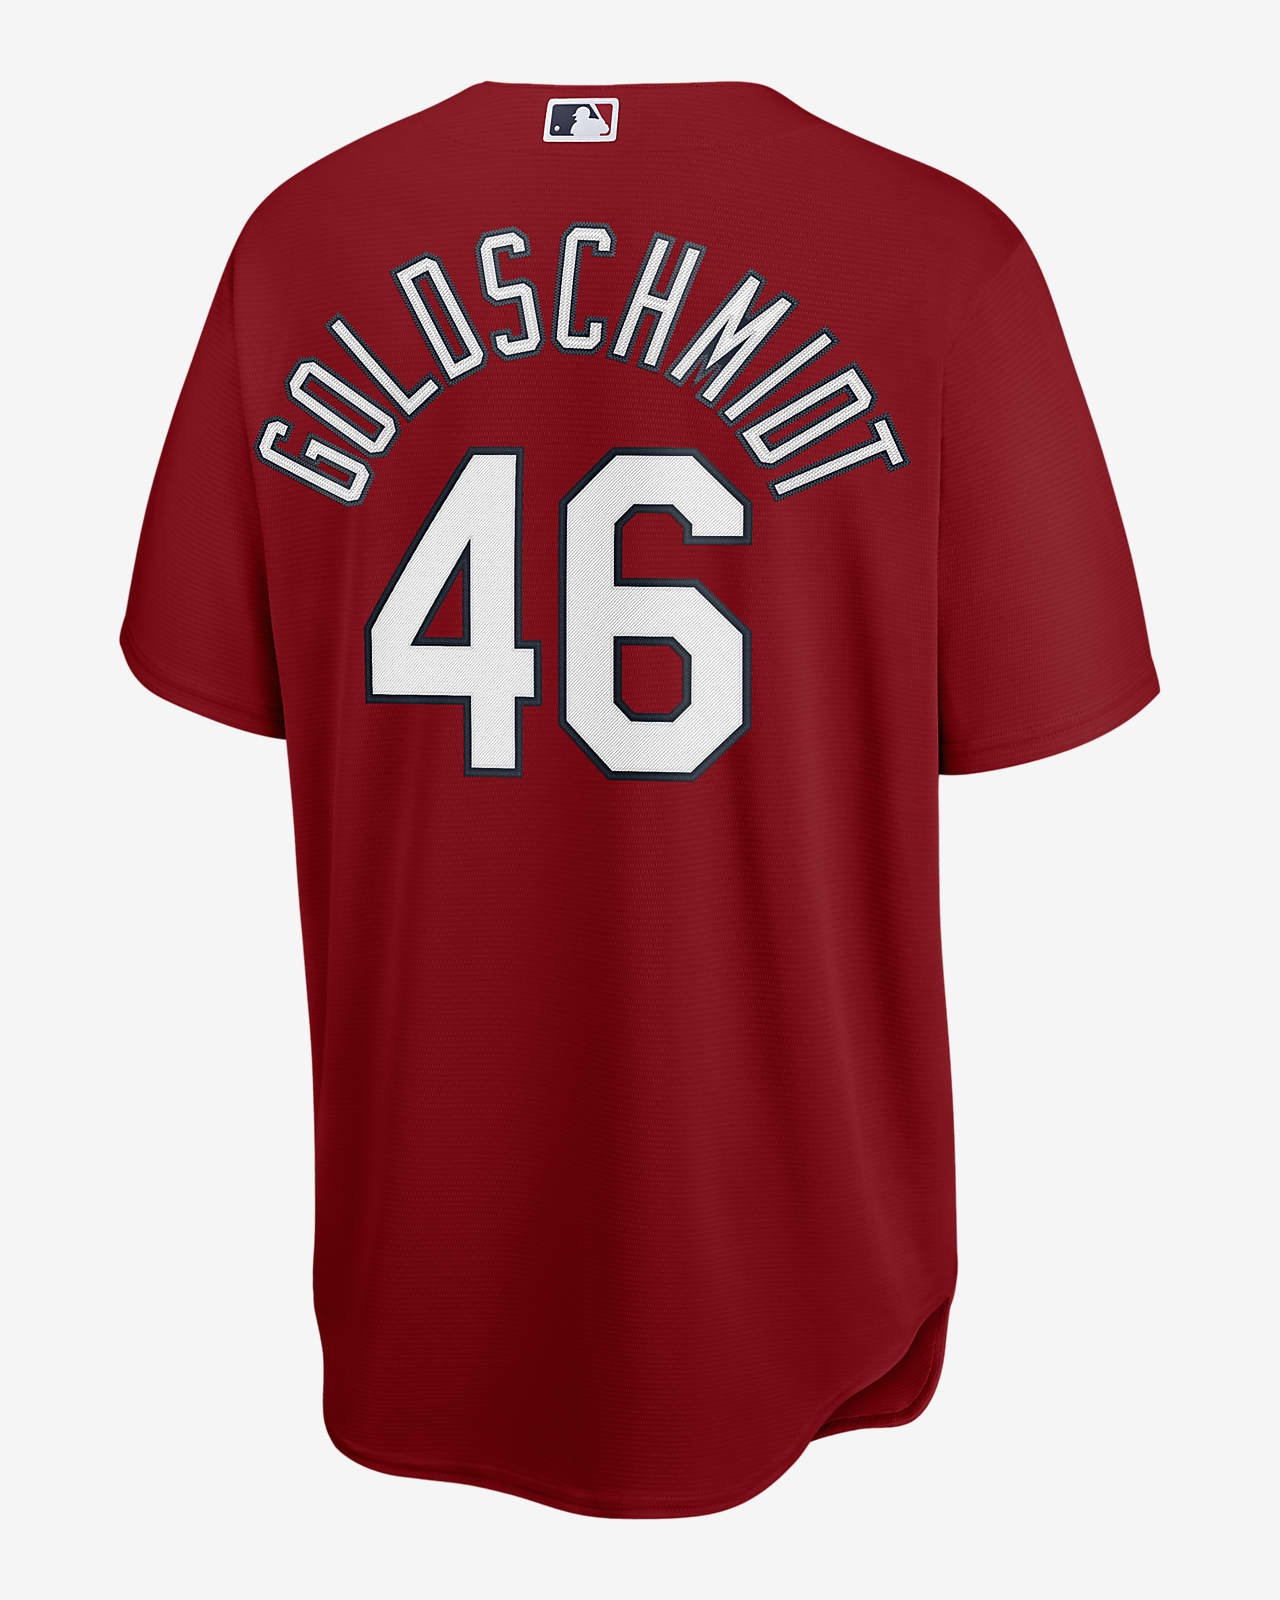 MLB St. Louis Cardinals (Paul Goldschmidt) Men's Replica Baseball Jersey.